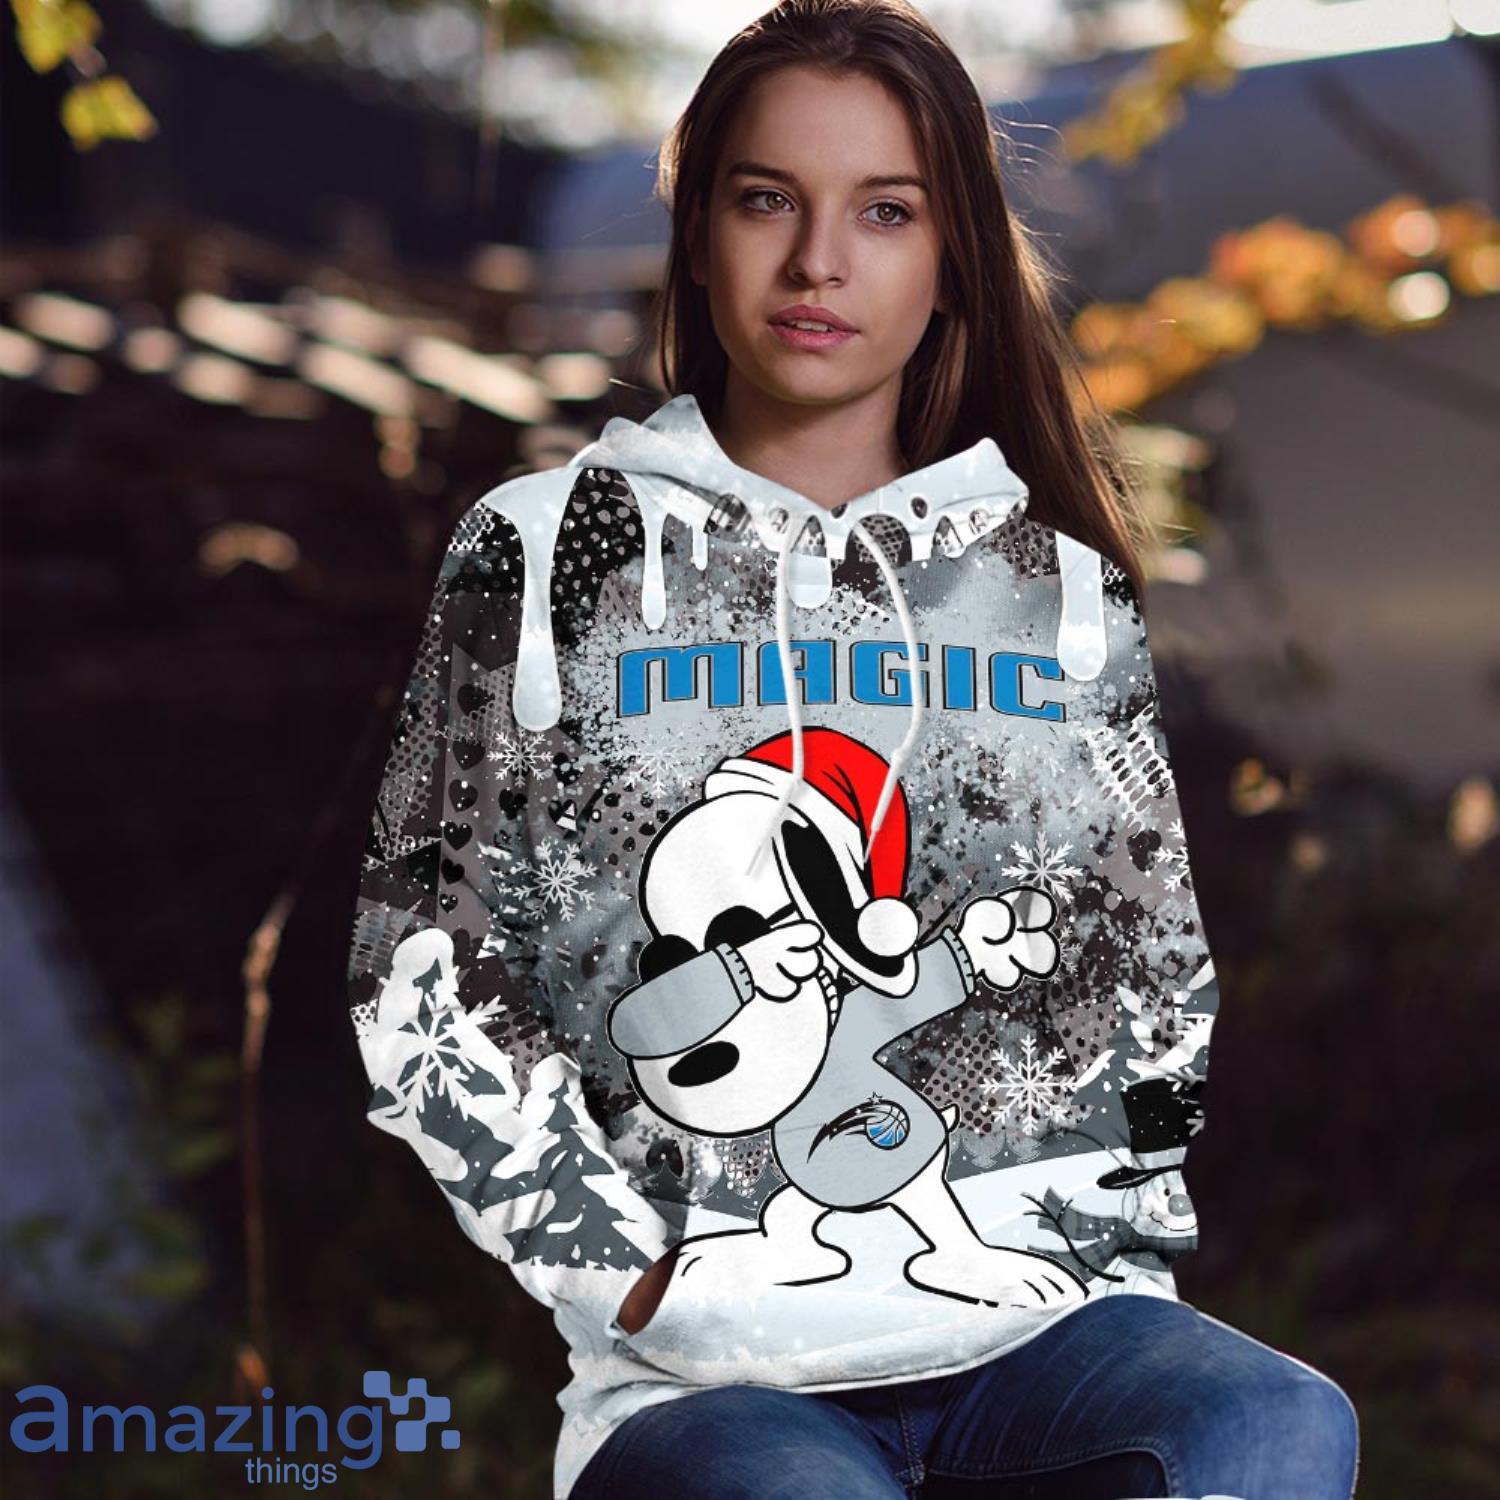 12% Sale Off NBA Hoodies Print 3D Denver Nuggets Hoodie Zip Up Sweatshirt –  4 Fan Shop